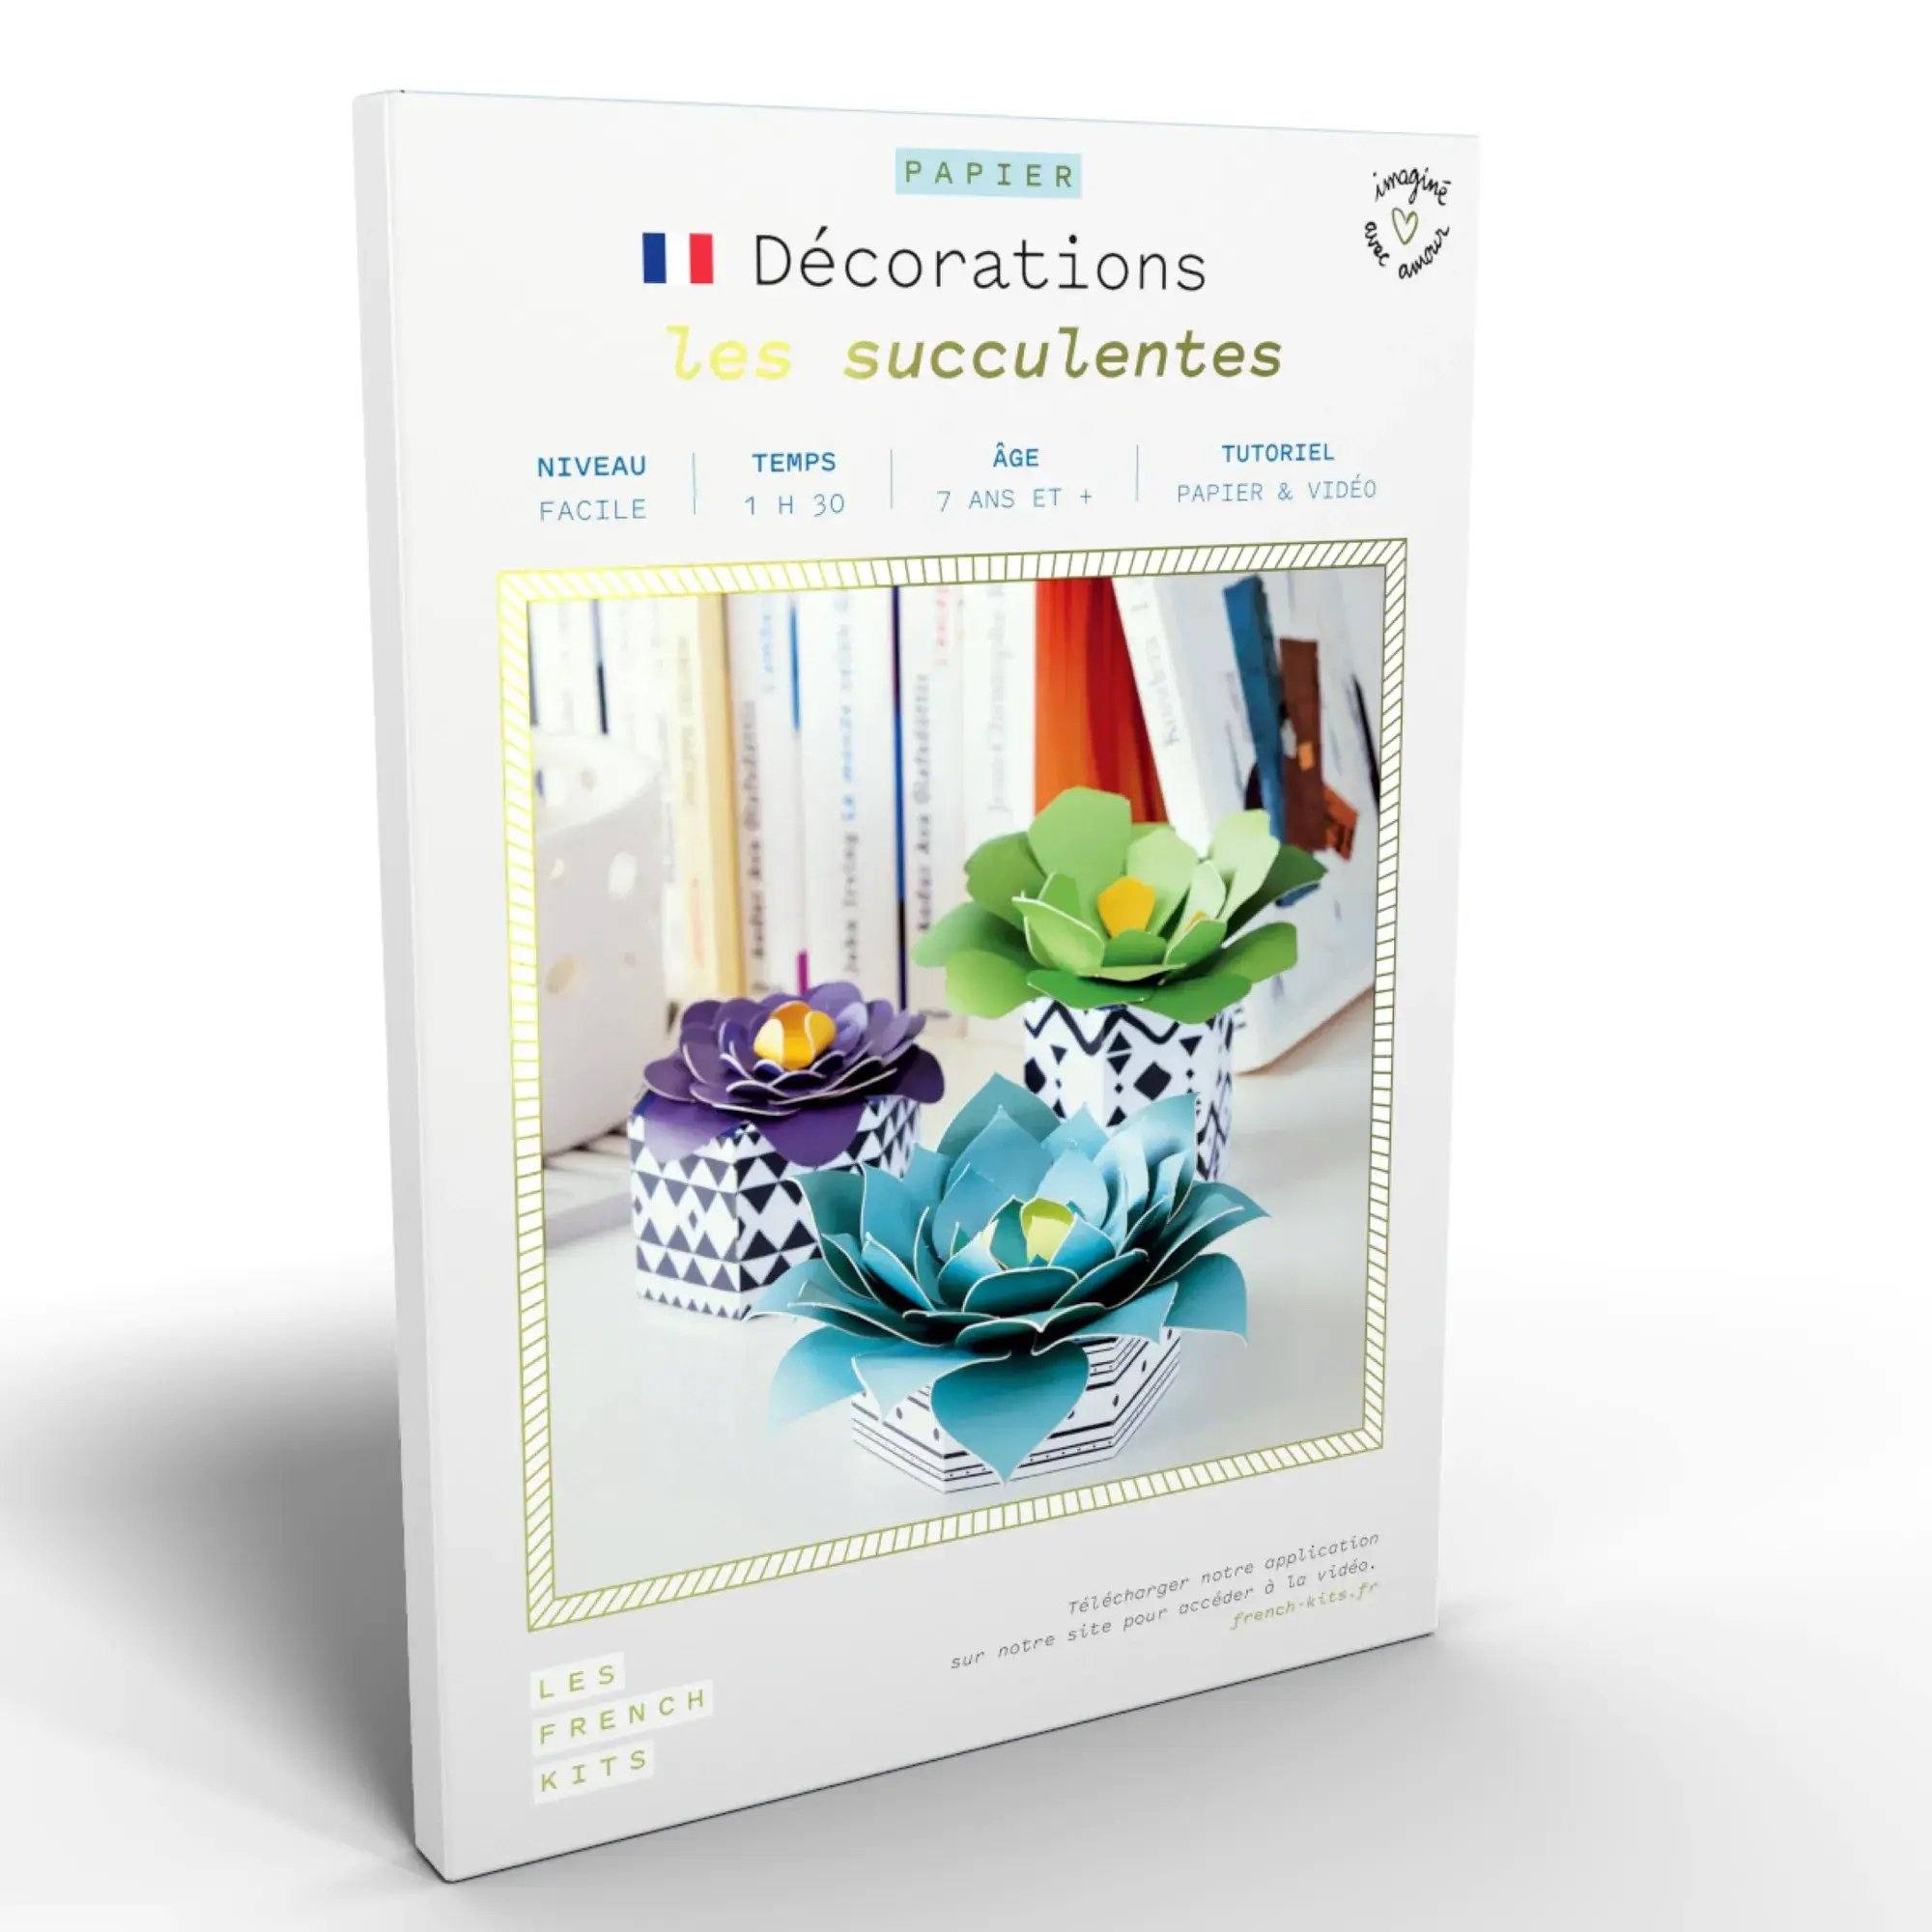 Les succulentes - Décorations DIY Les French Kits 